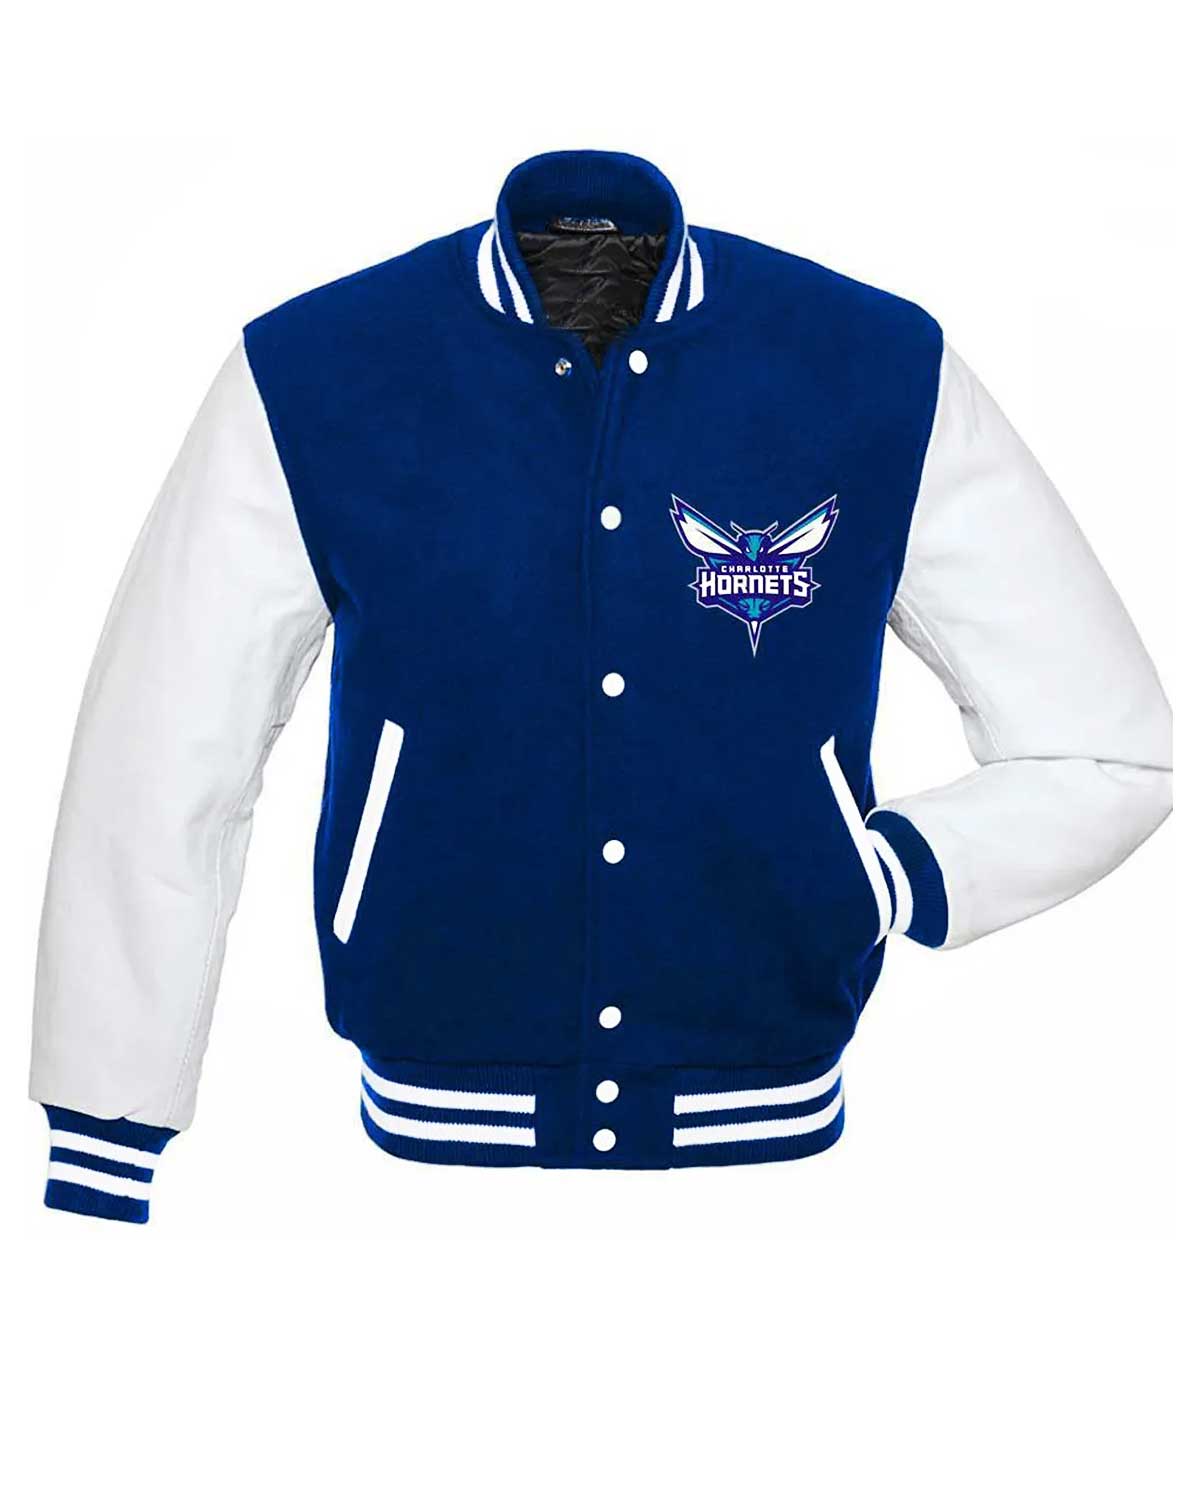 Charlotte Hornets NBA Letterman Blue And White Varsity Jacket